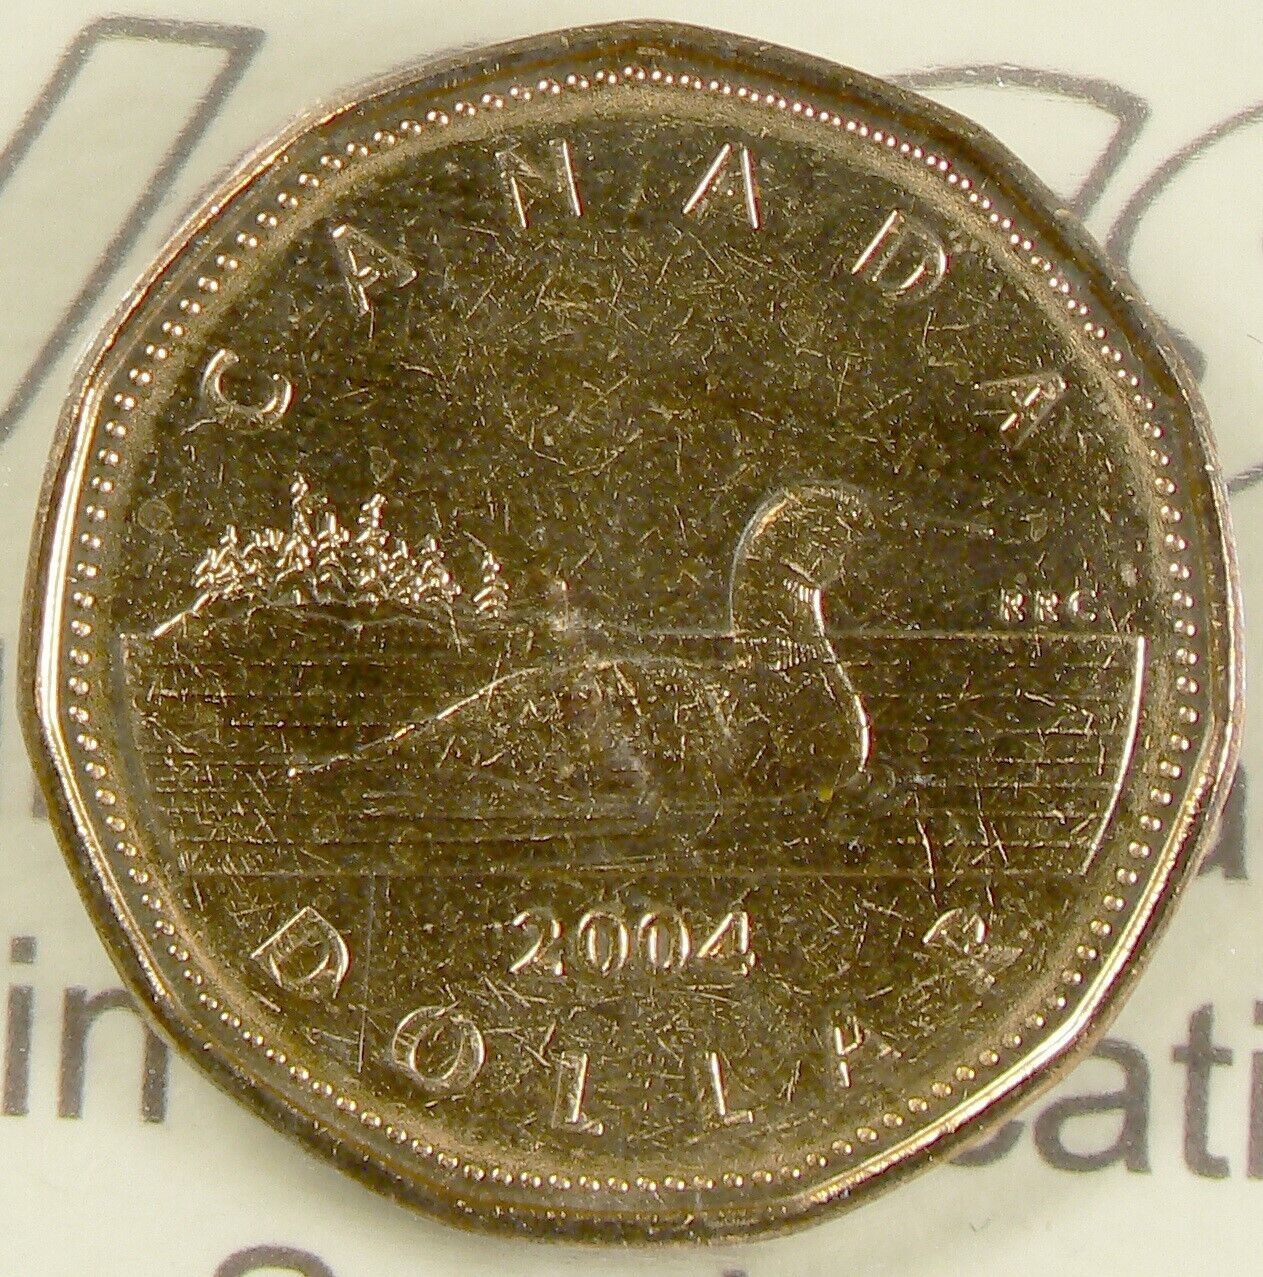  アンティークコイン コイン 金貨 銀貨  [送料無料] 2004 Canada $1 ICCS MS64 Loon #16361